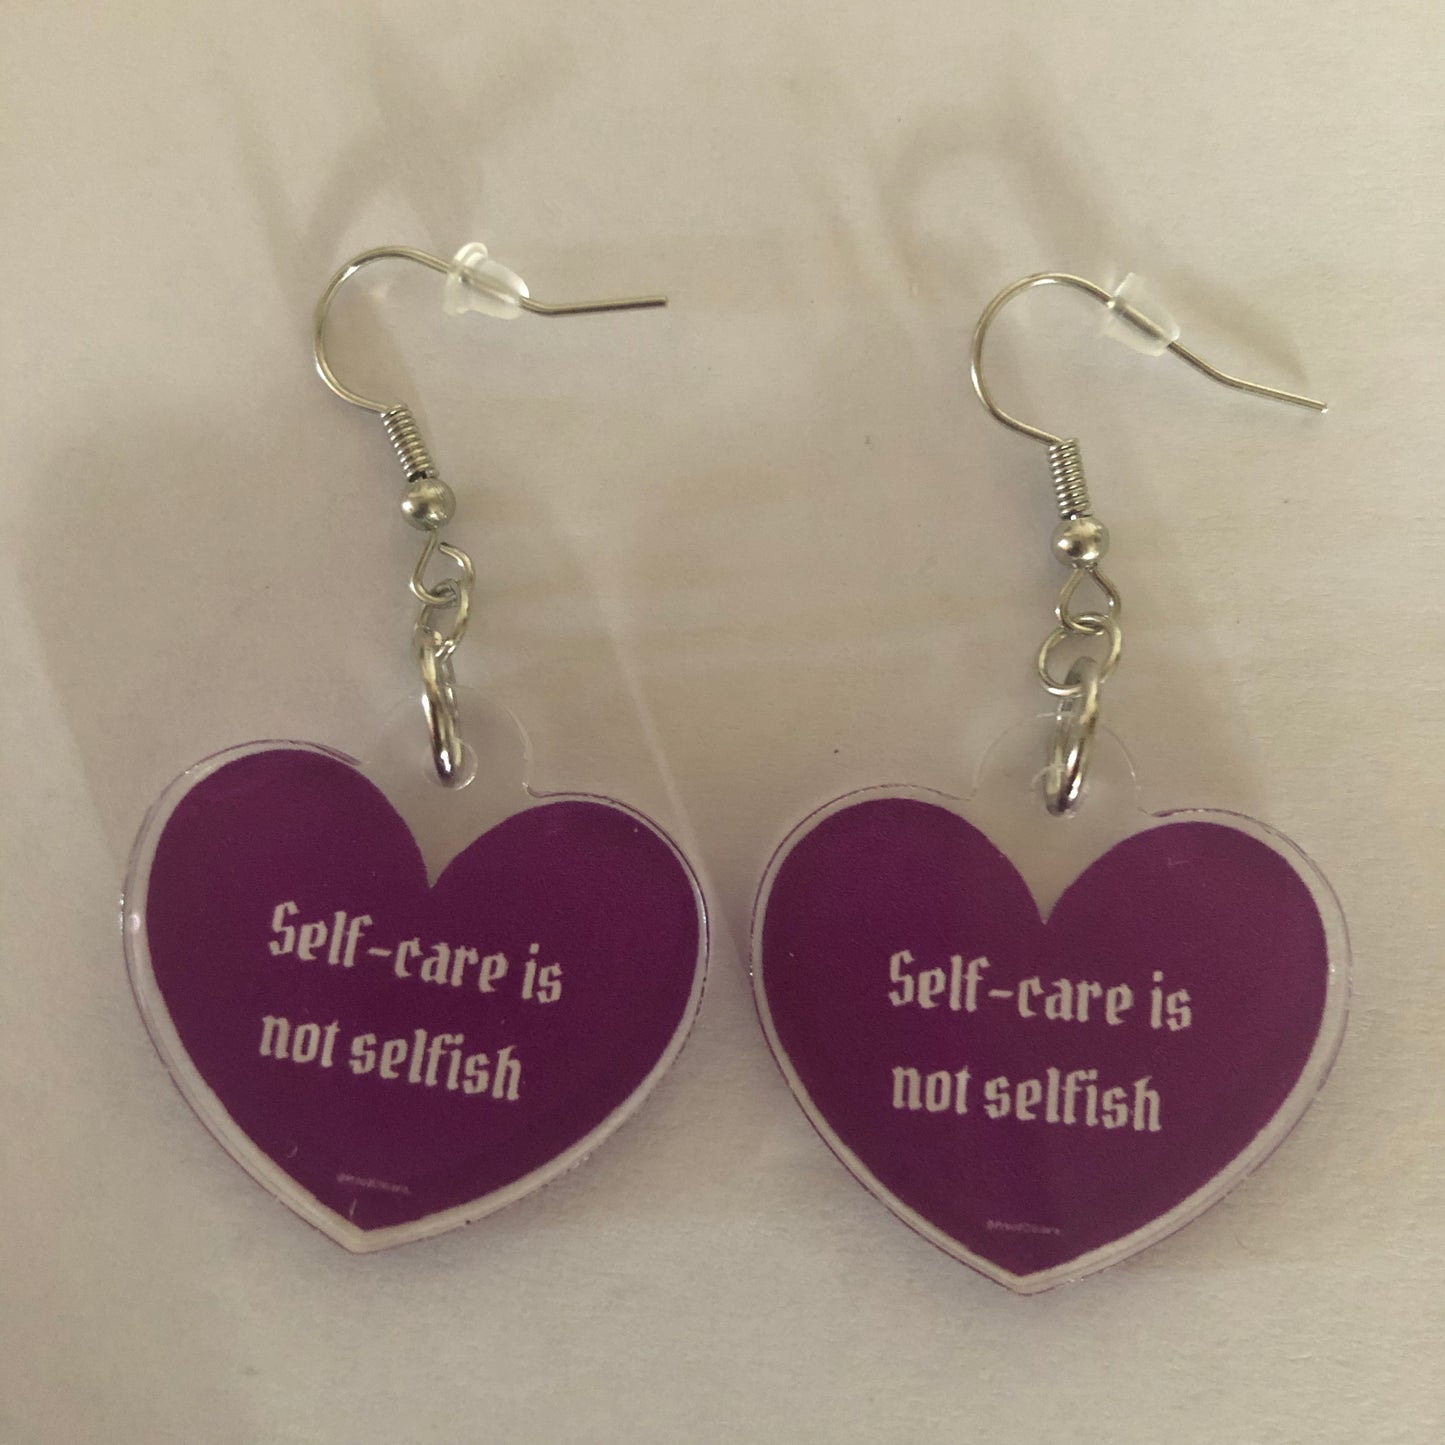 Self-care is not selfish earrings